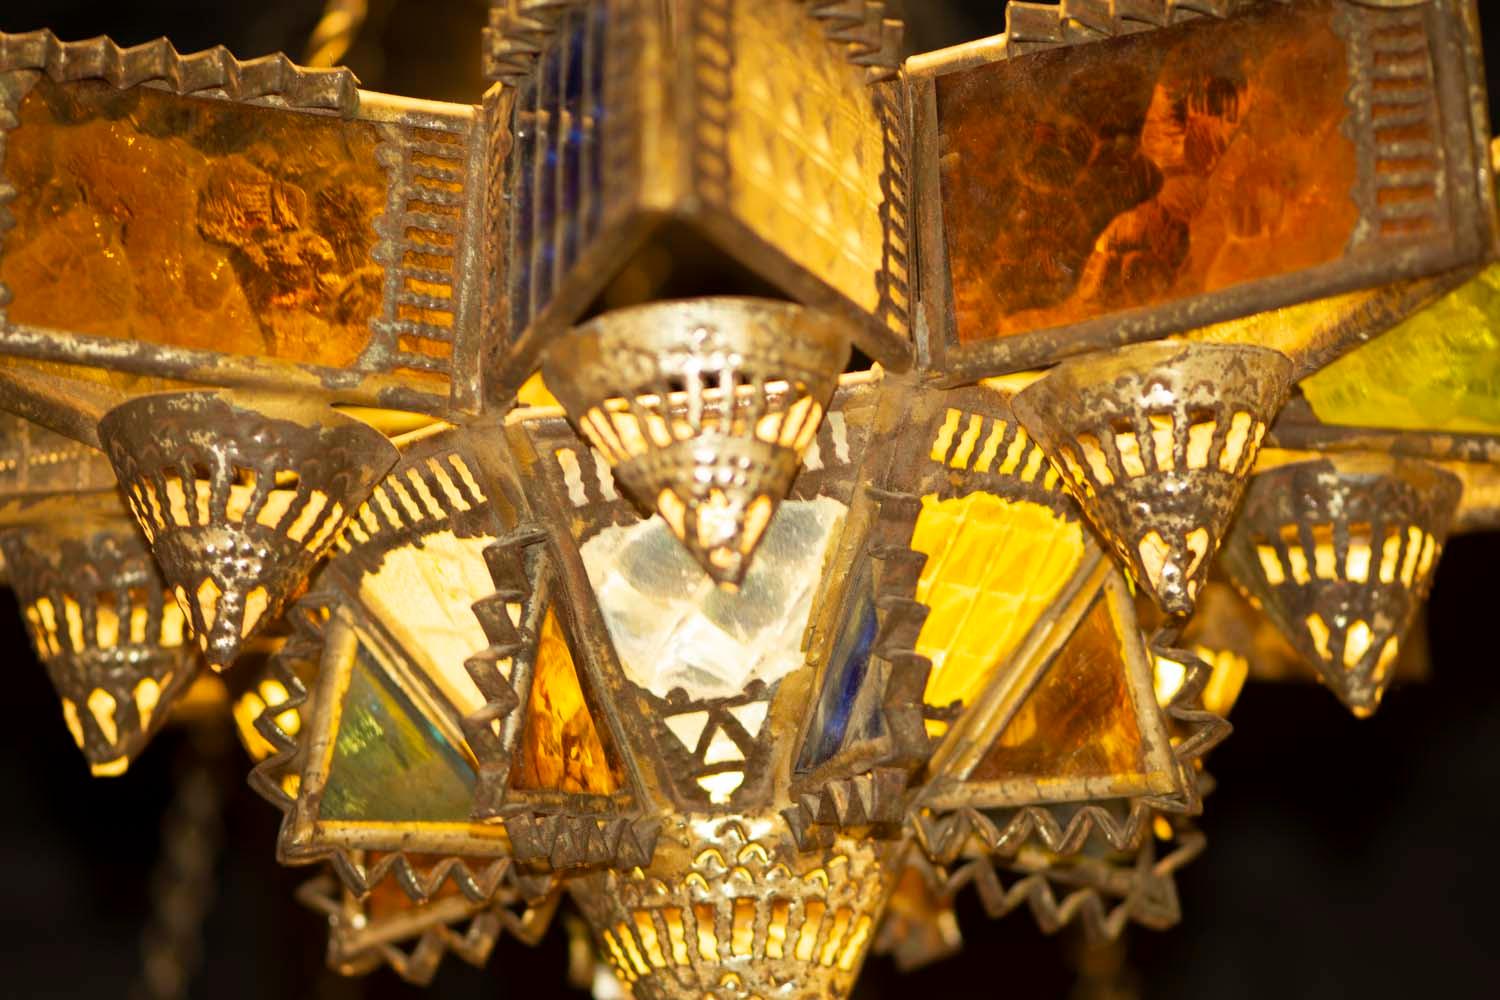 Beeindruckende Lampe, in einzigartiger volkstümlicher Handwerkskunst, Blech, gebogen und gesägt; kleine Glasplättchen in verschiedenen Texturen und Farben.
Allgemeine Form eines Sterns mit acht Spitzen, mit Platz für neun Ölgefäße,